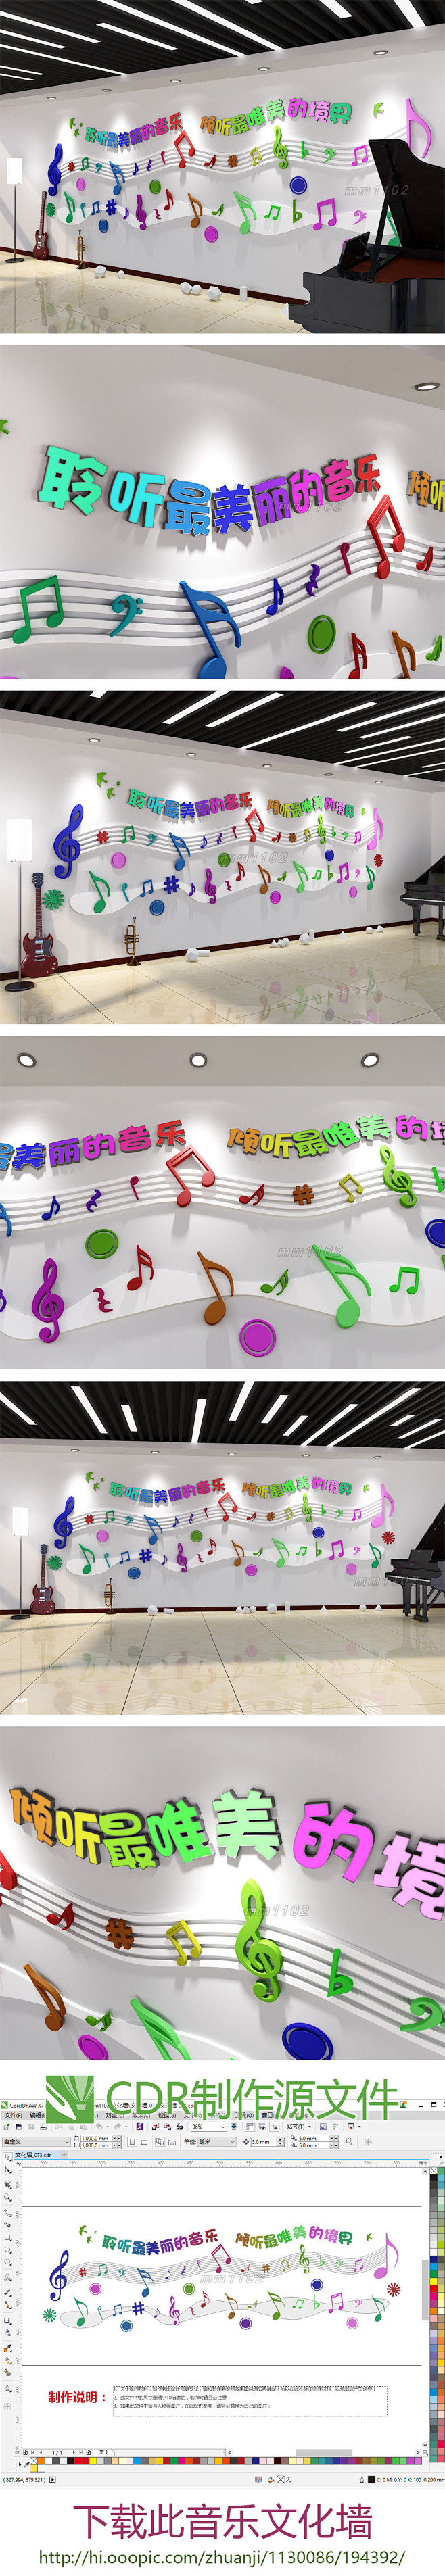 音乐主题文化墙小学音乐室知识文化墙效果图...